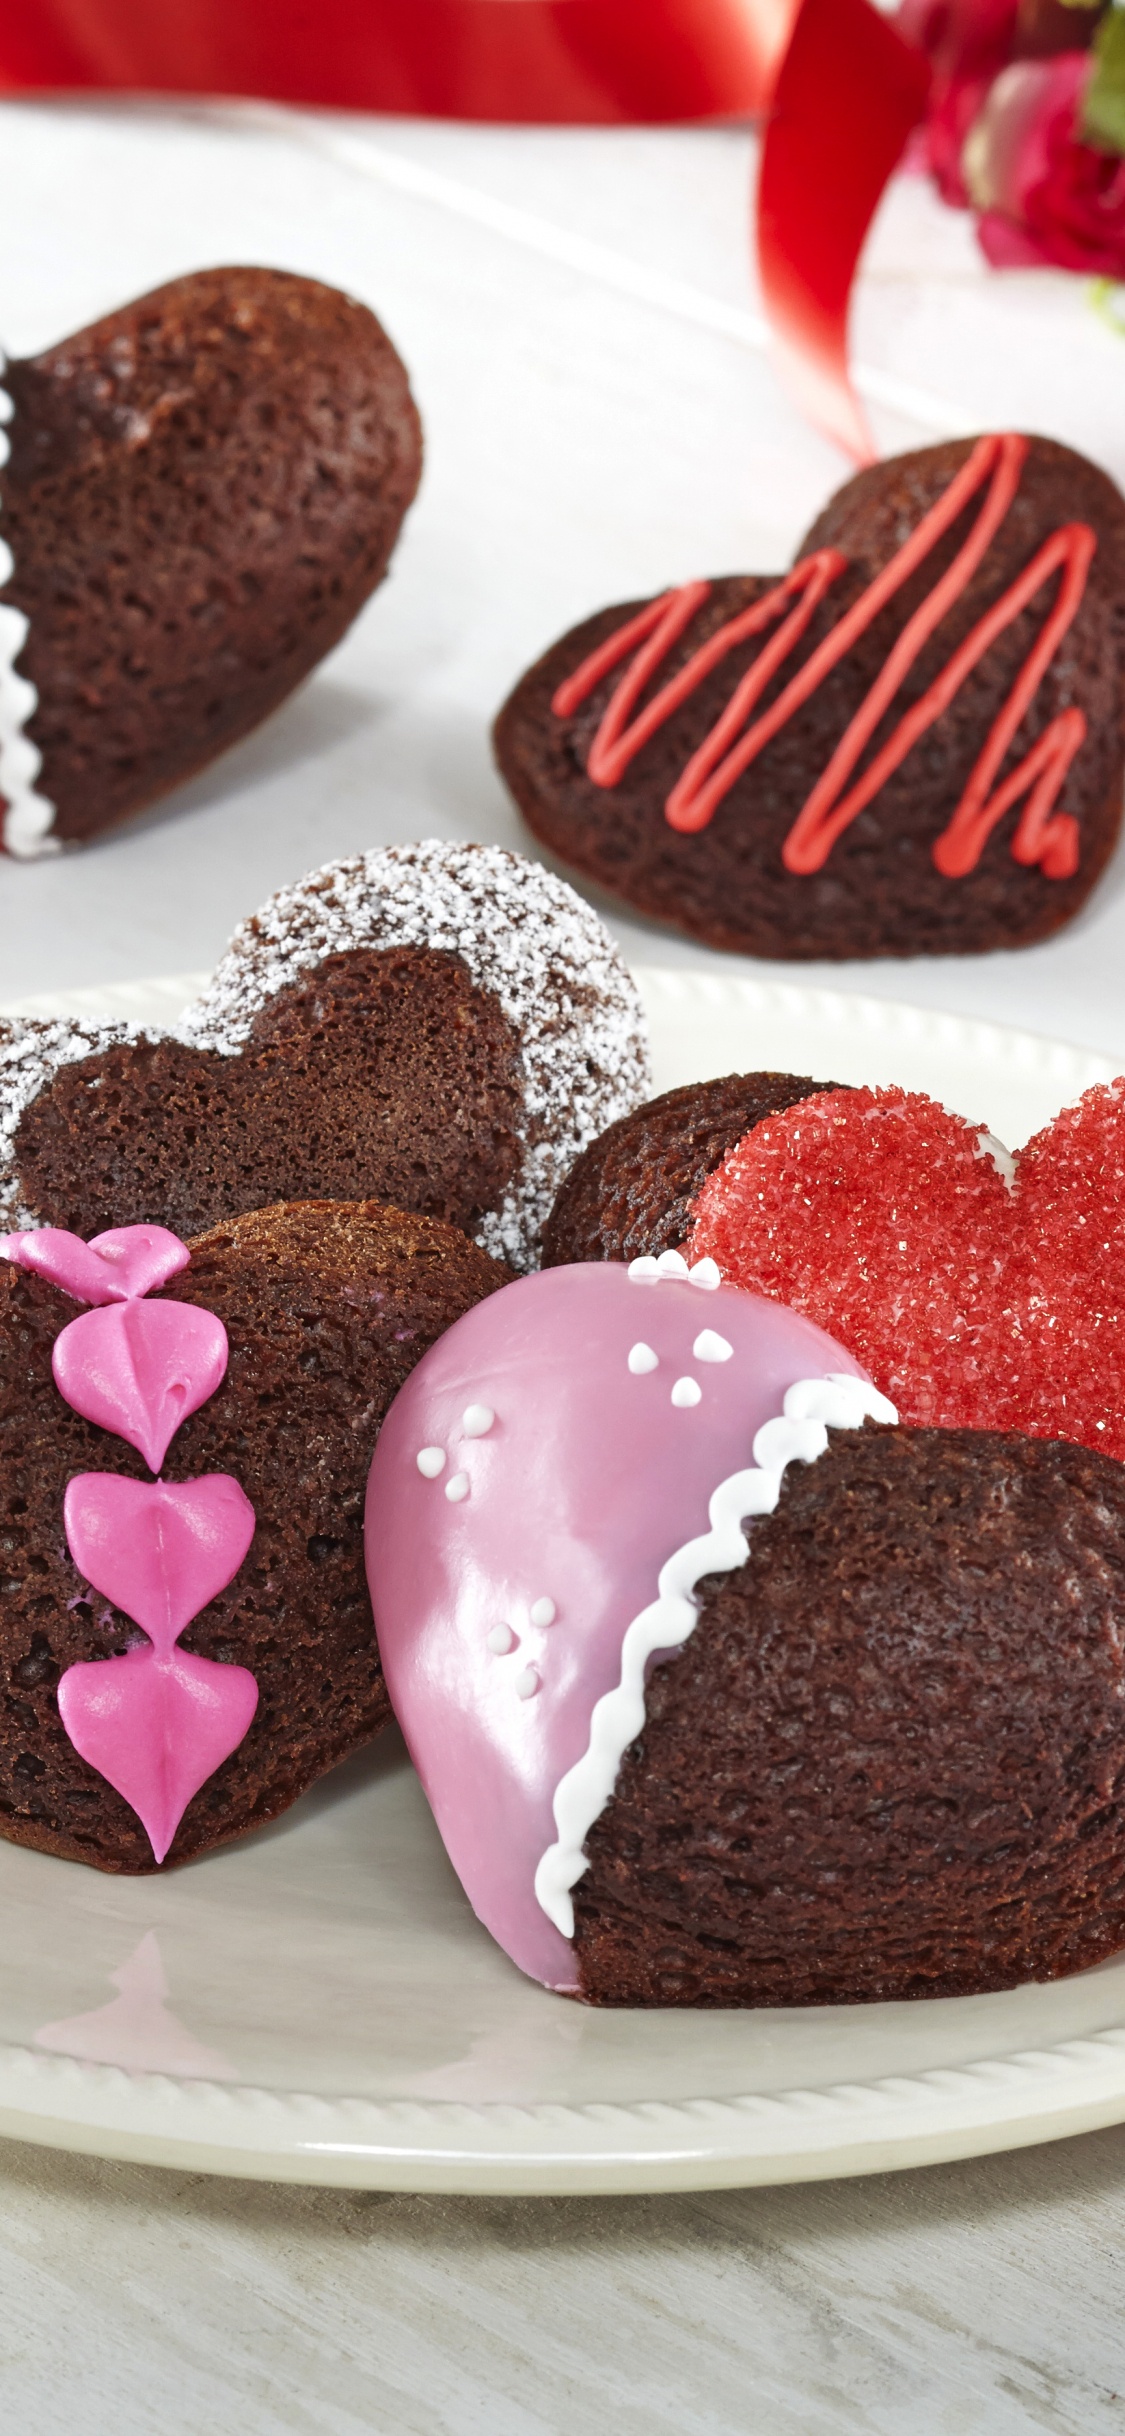 Schokoladenkuchen, Dessert, Valentines Tag, Schokolade, Lebensmittel. Wallpaper in 1125x2436 Resolution